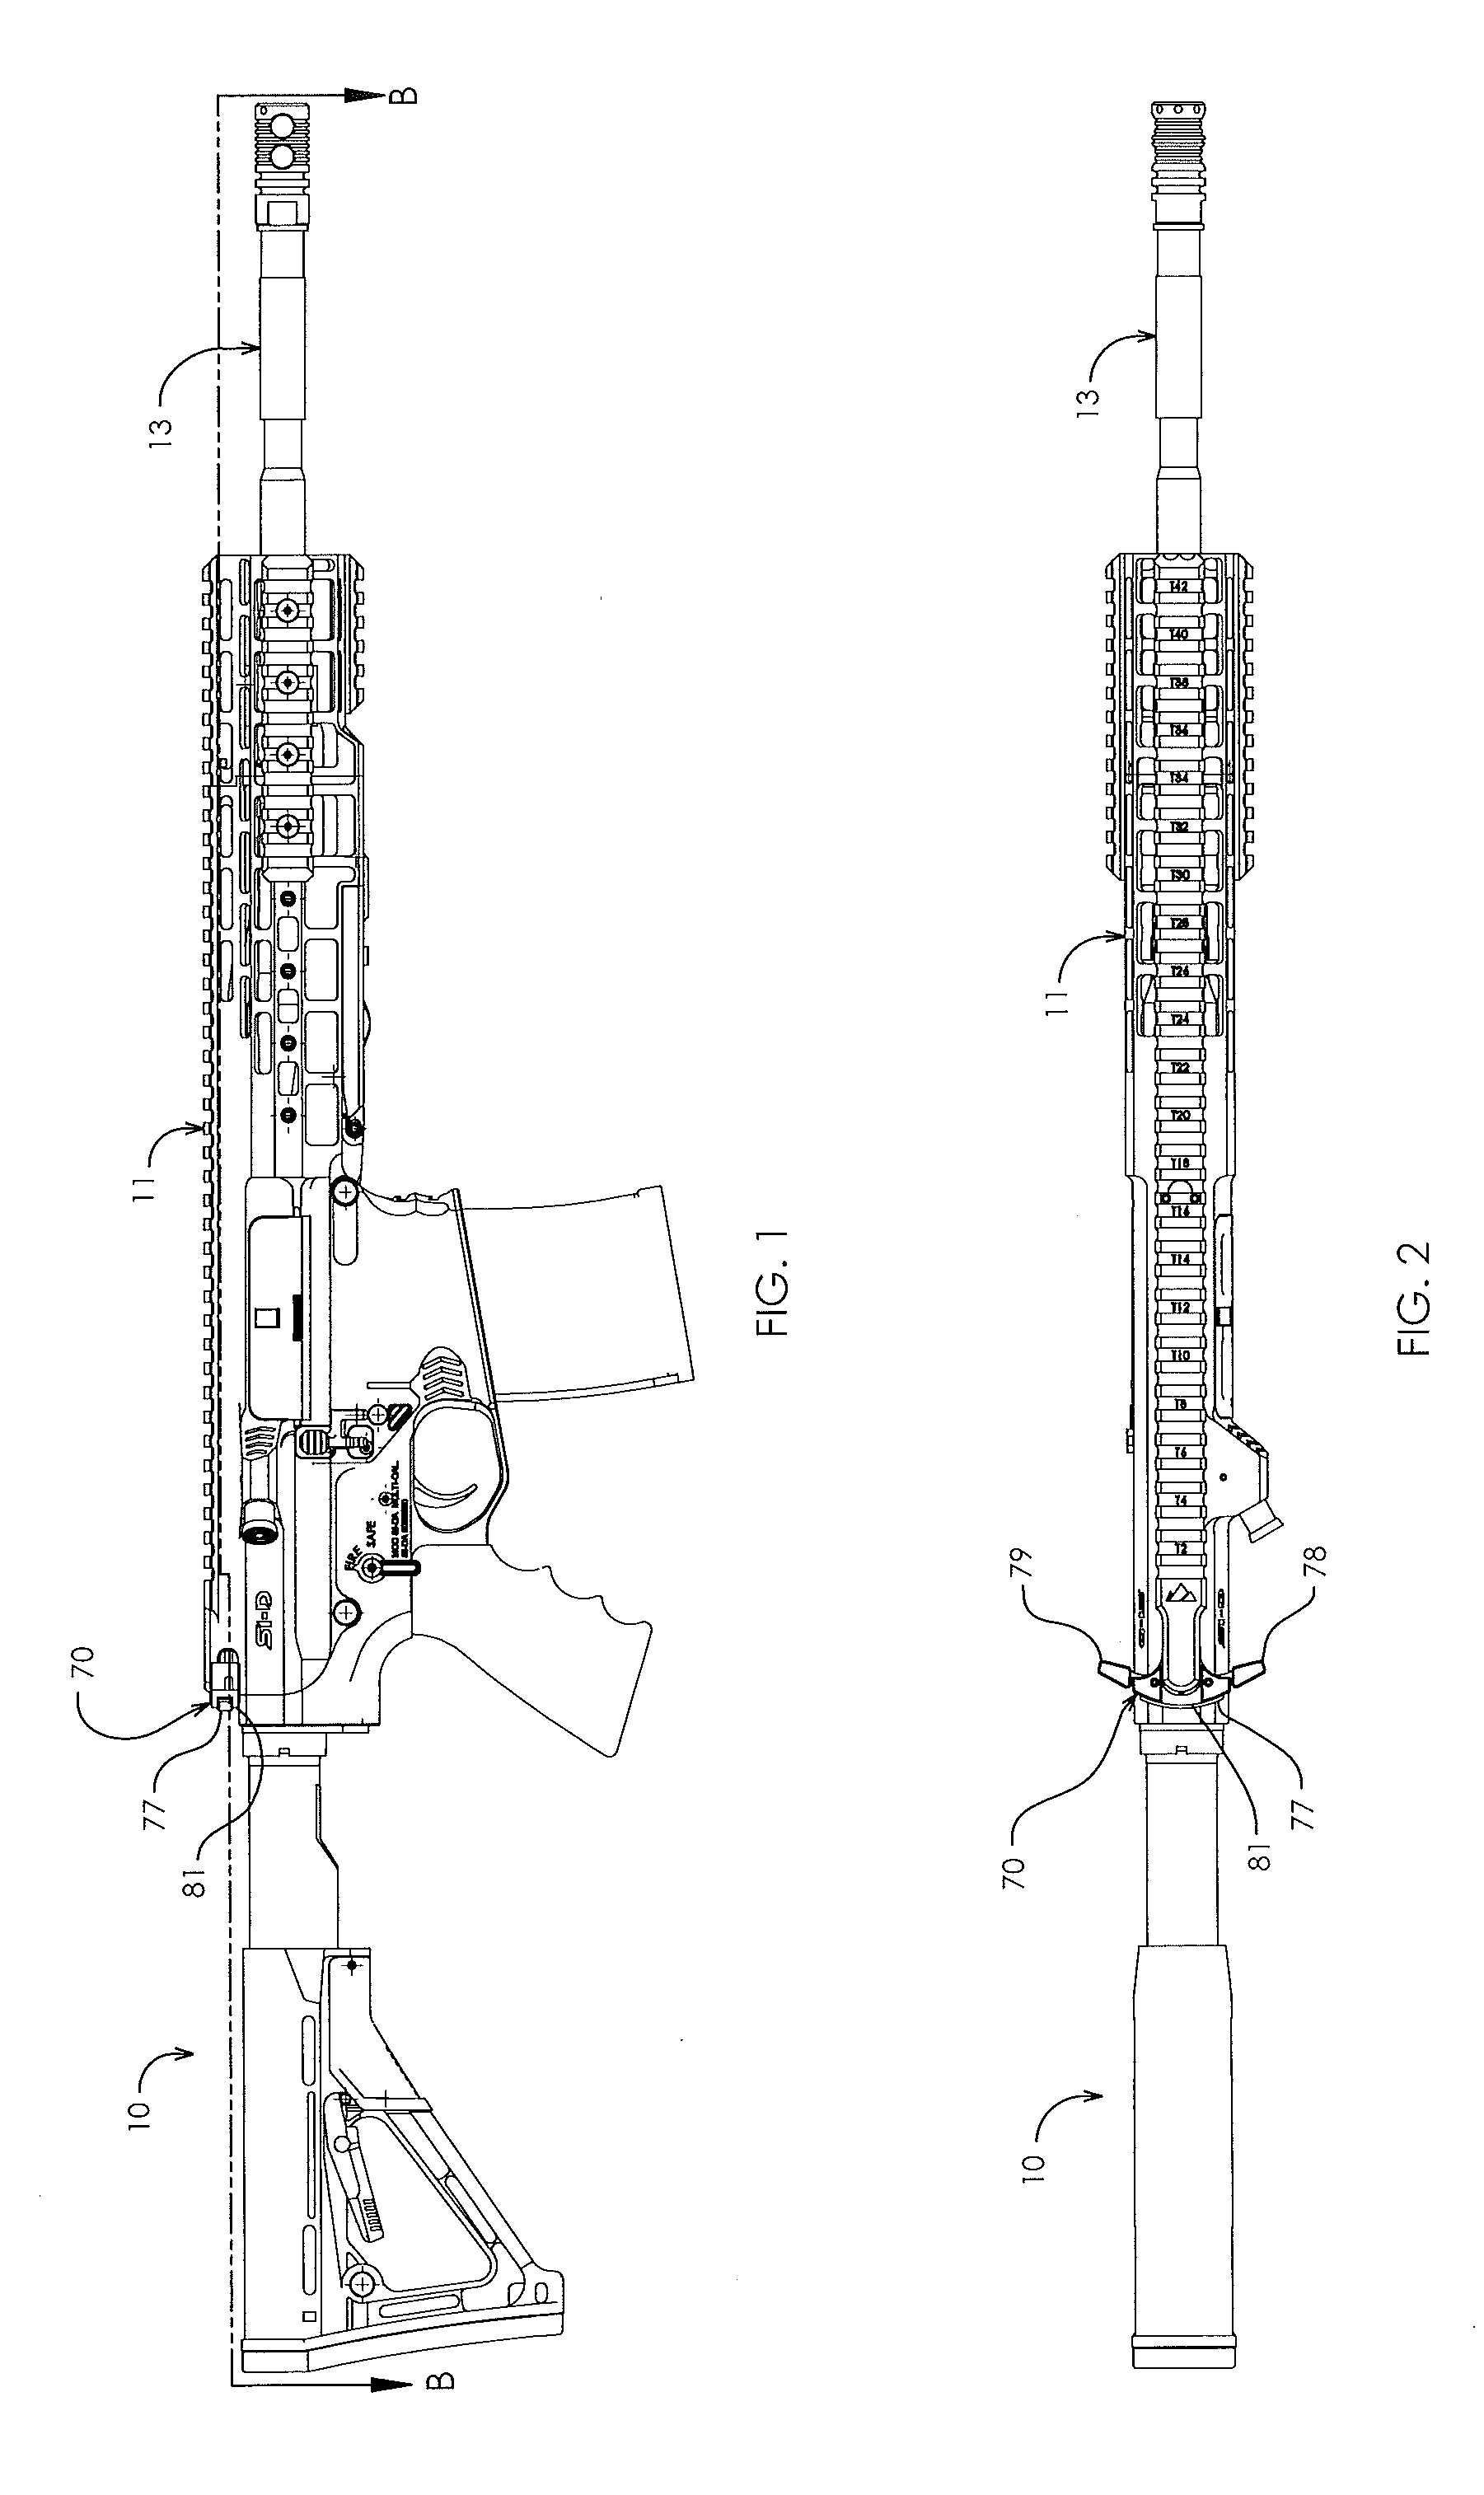 Internal latch in charging handle of firearm